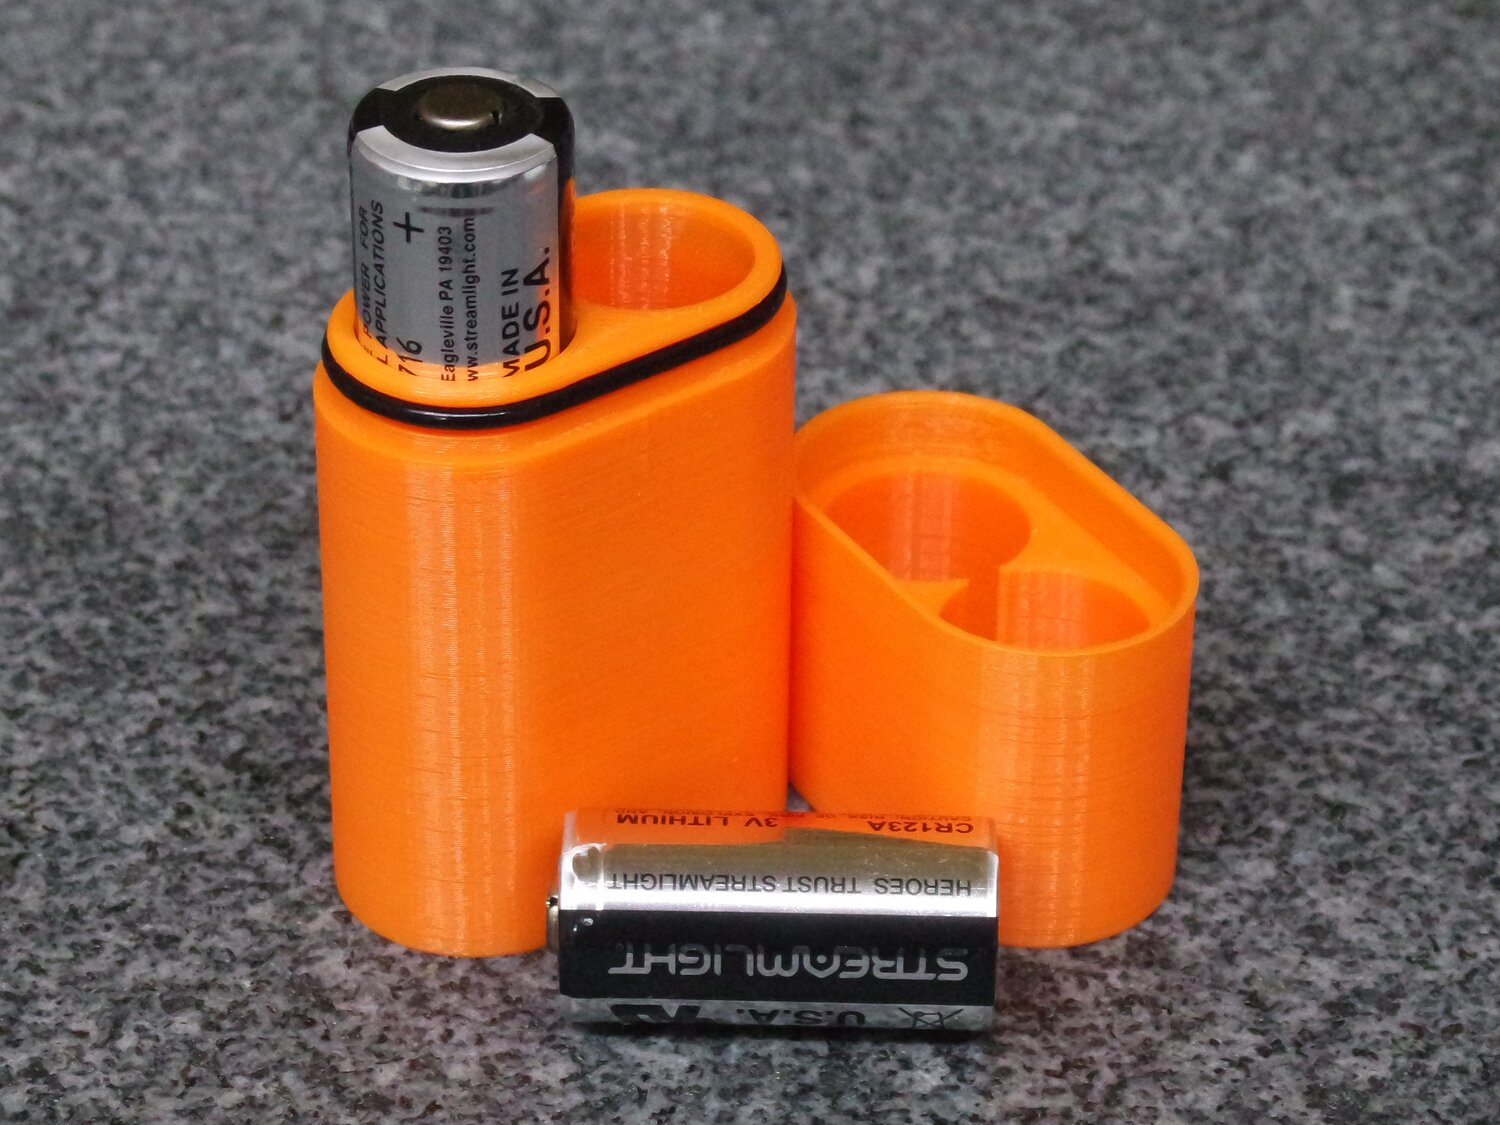 CR123 Battery Holder, CR123 Battery Holders